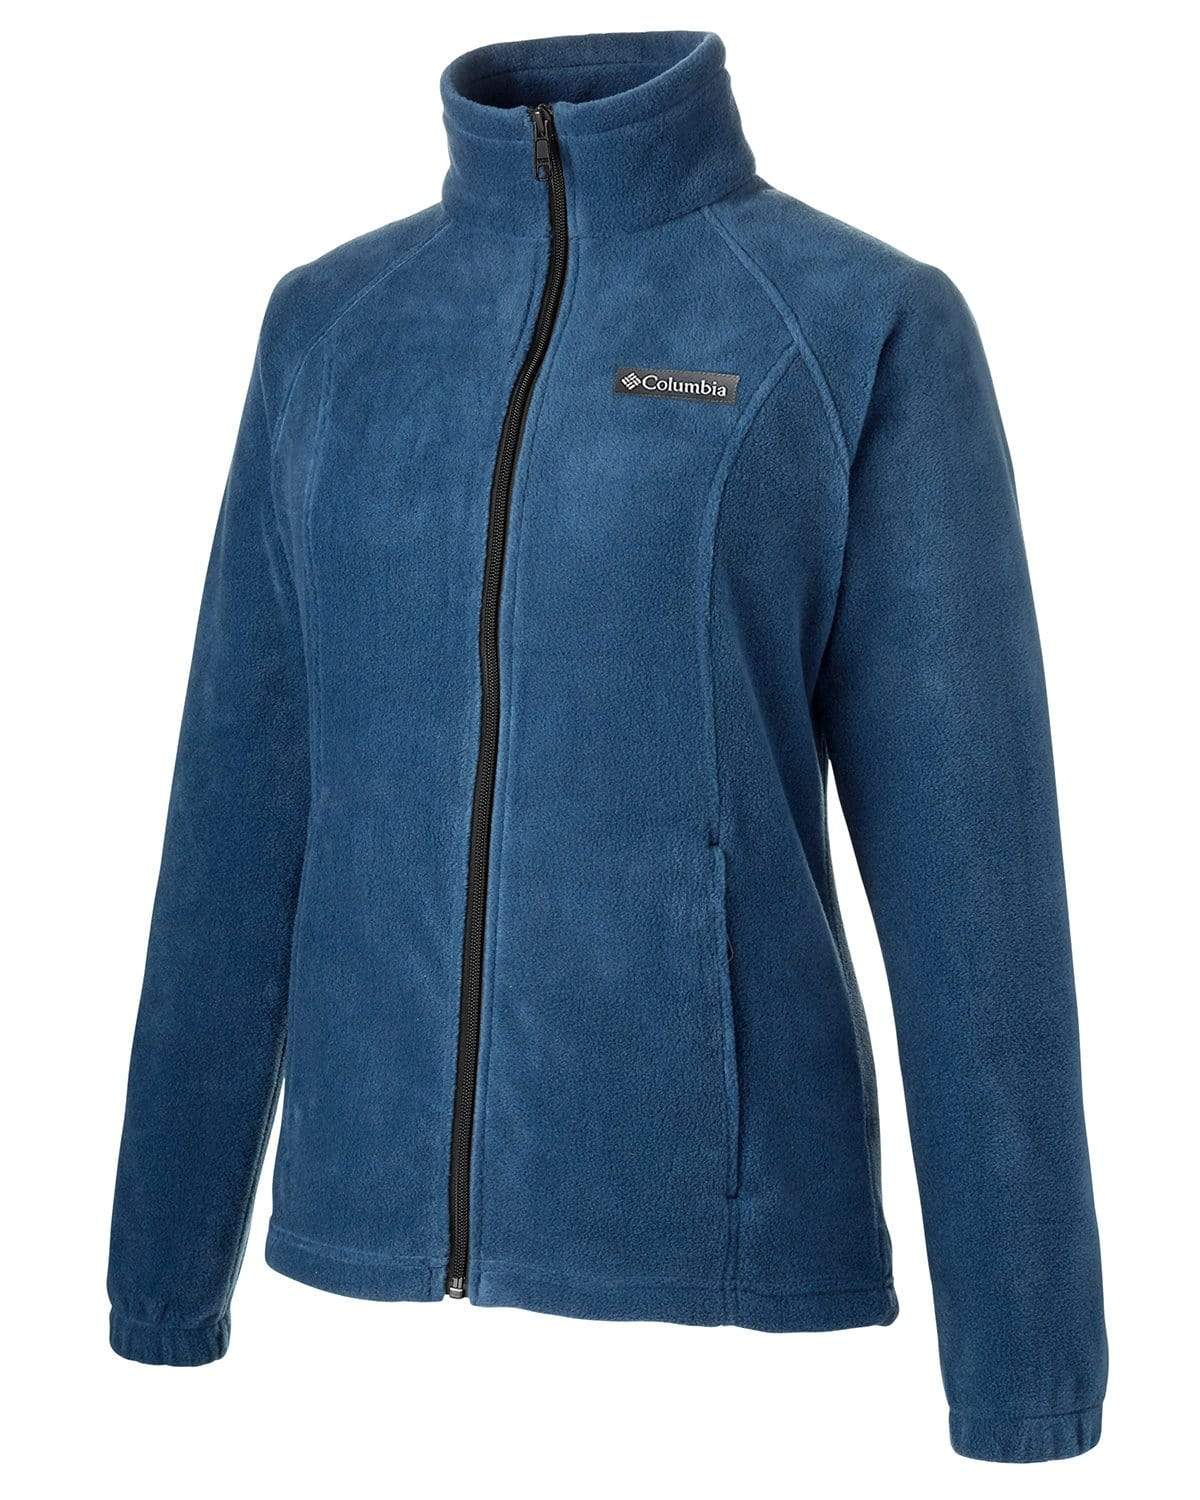 Columbia Women's Benton Springs Full-Zip Jacket